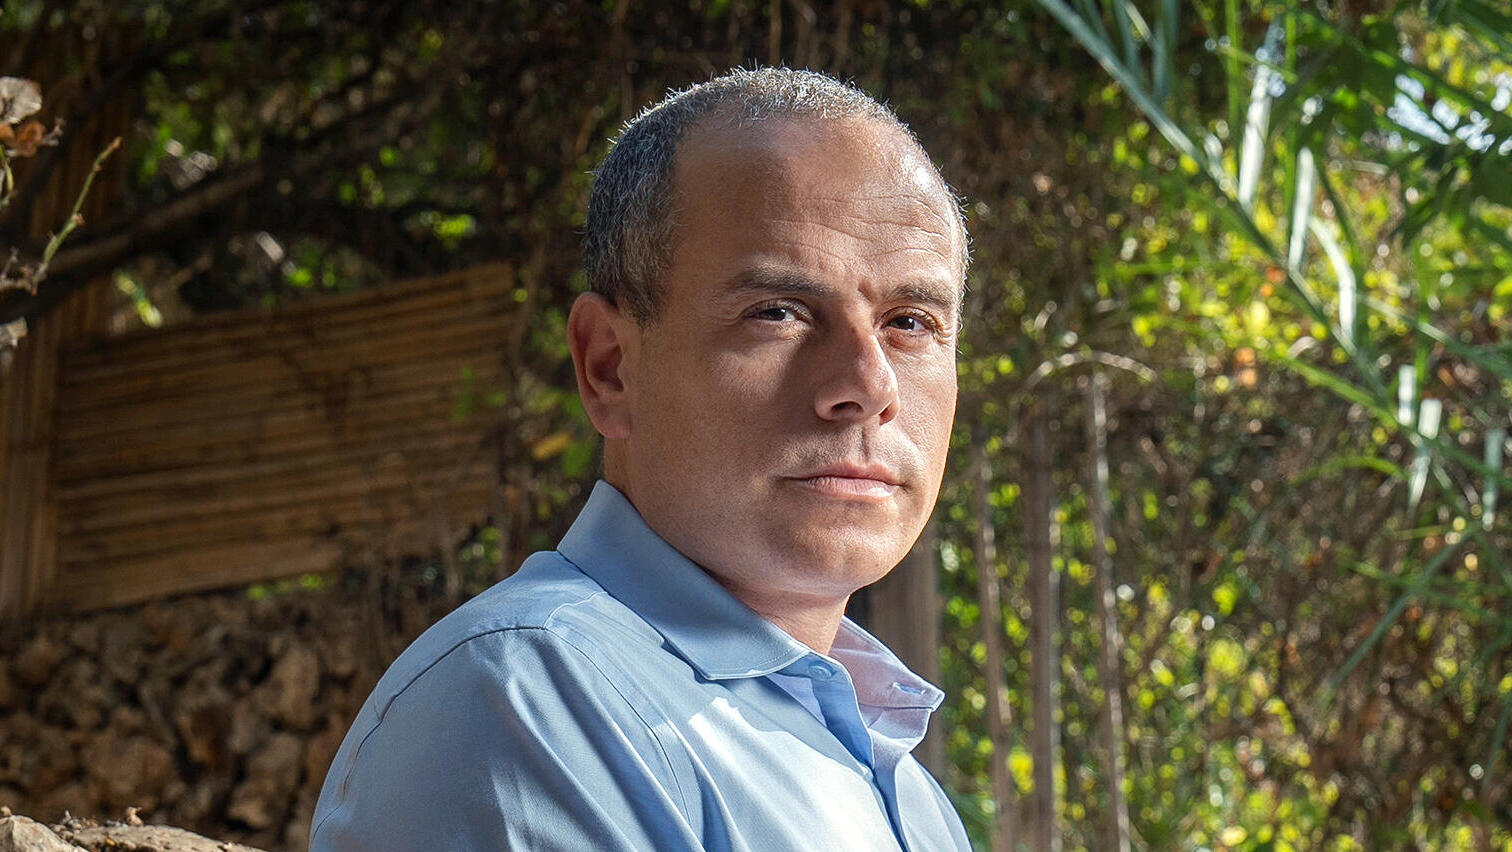 בן מיוסט יועץ לאגף תקציבים במשרד האוצר בתחום התשתיות וראש המינהלת לפרויקטים אסטרטגיים בעיריית רמת גן